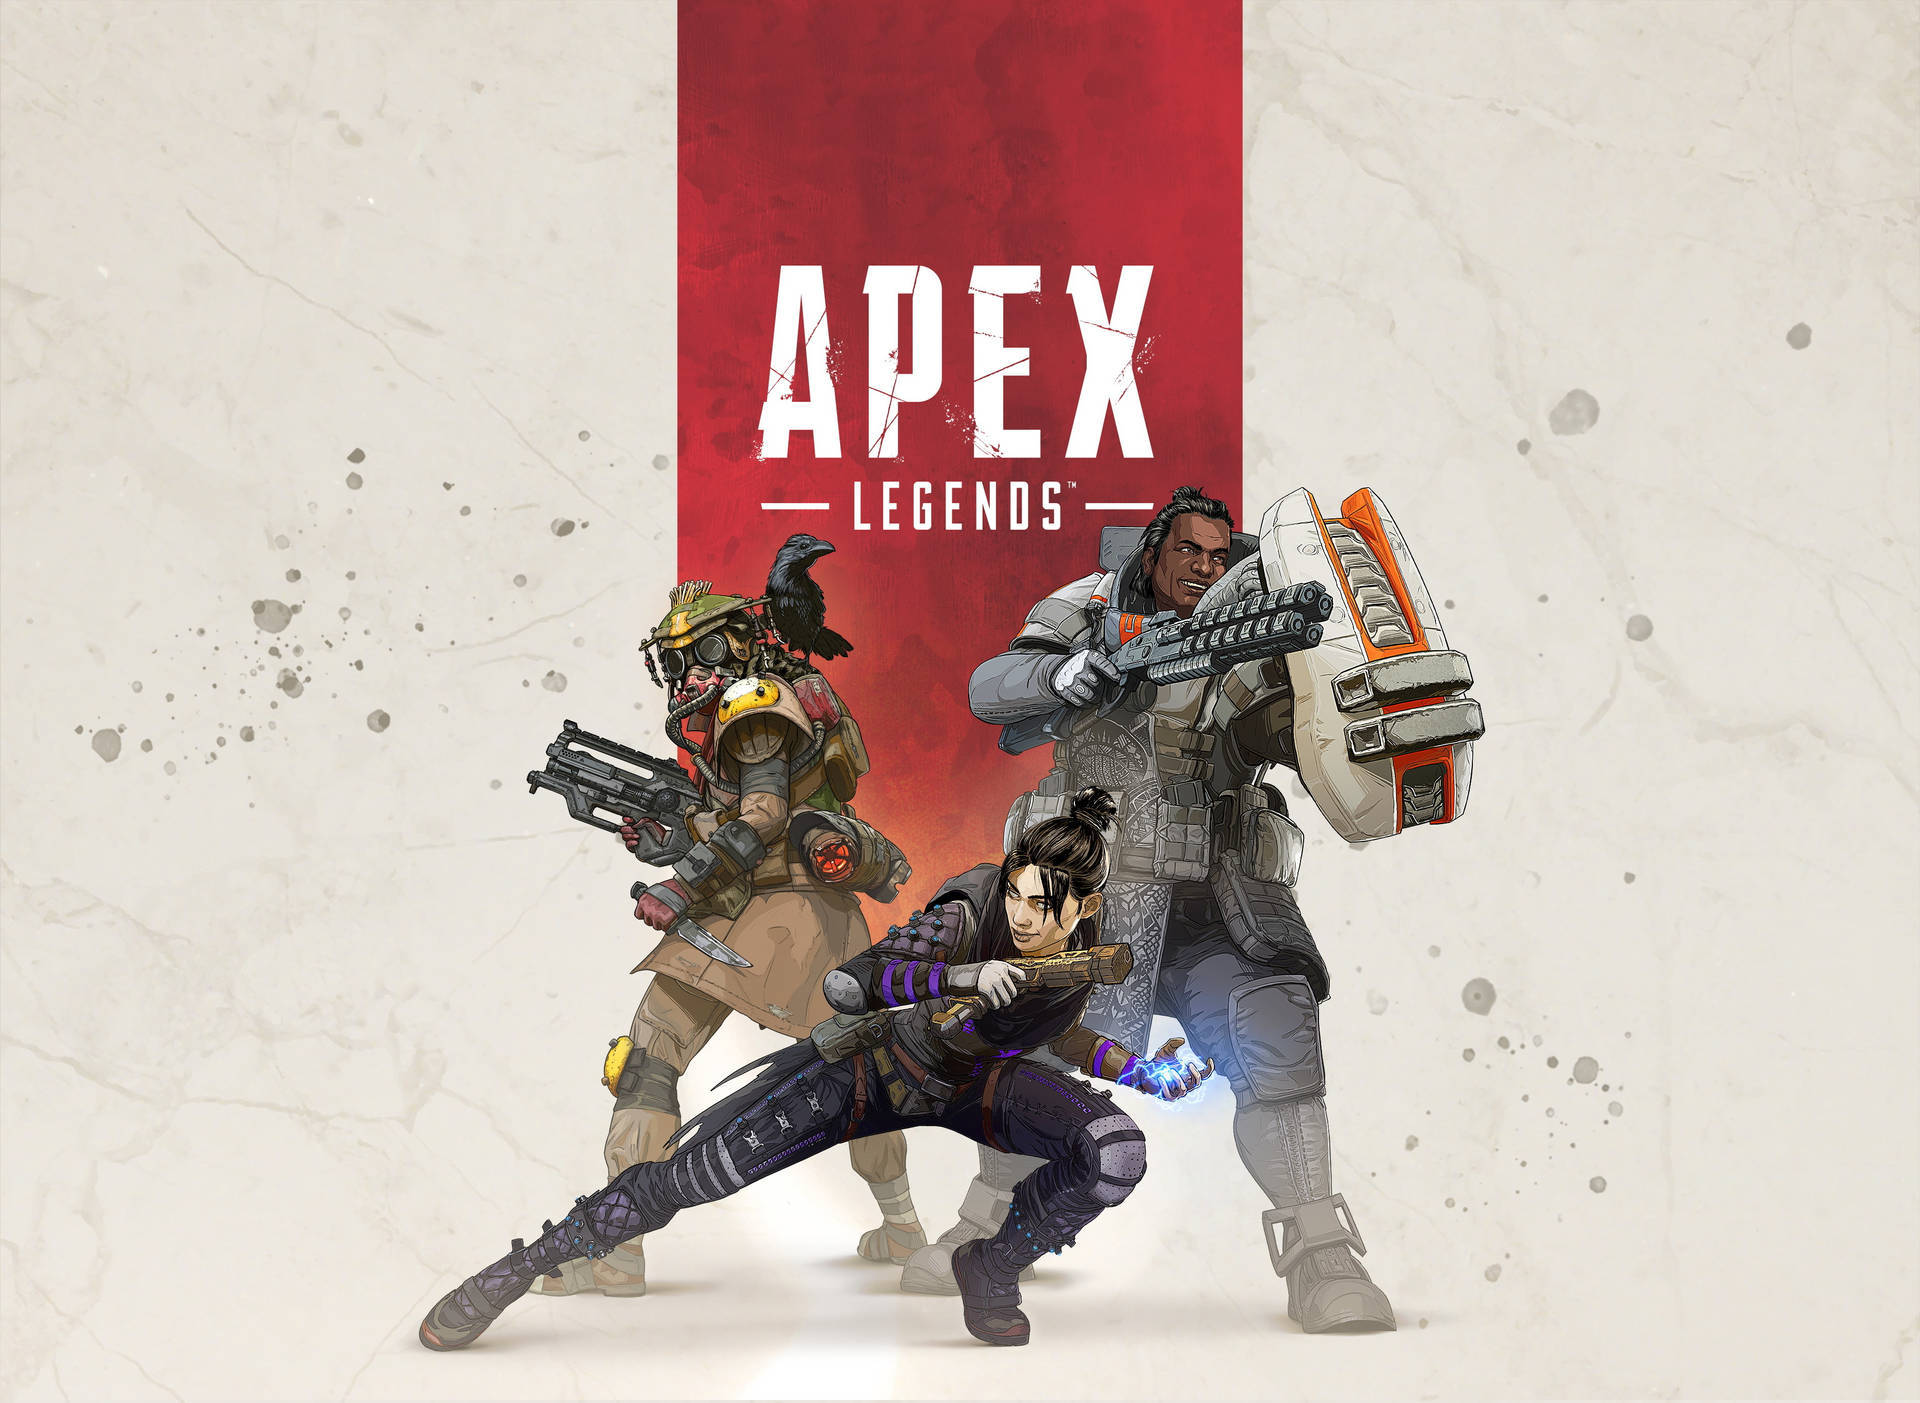 Eineikonische Schlacht: Spiele Das Coole Videospiel Apex Legends. Wallpaper